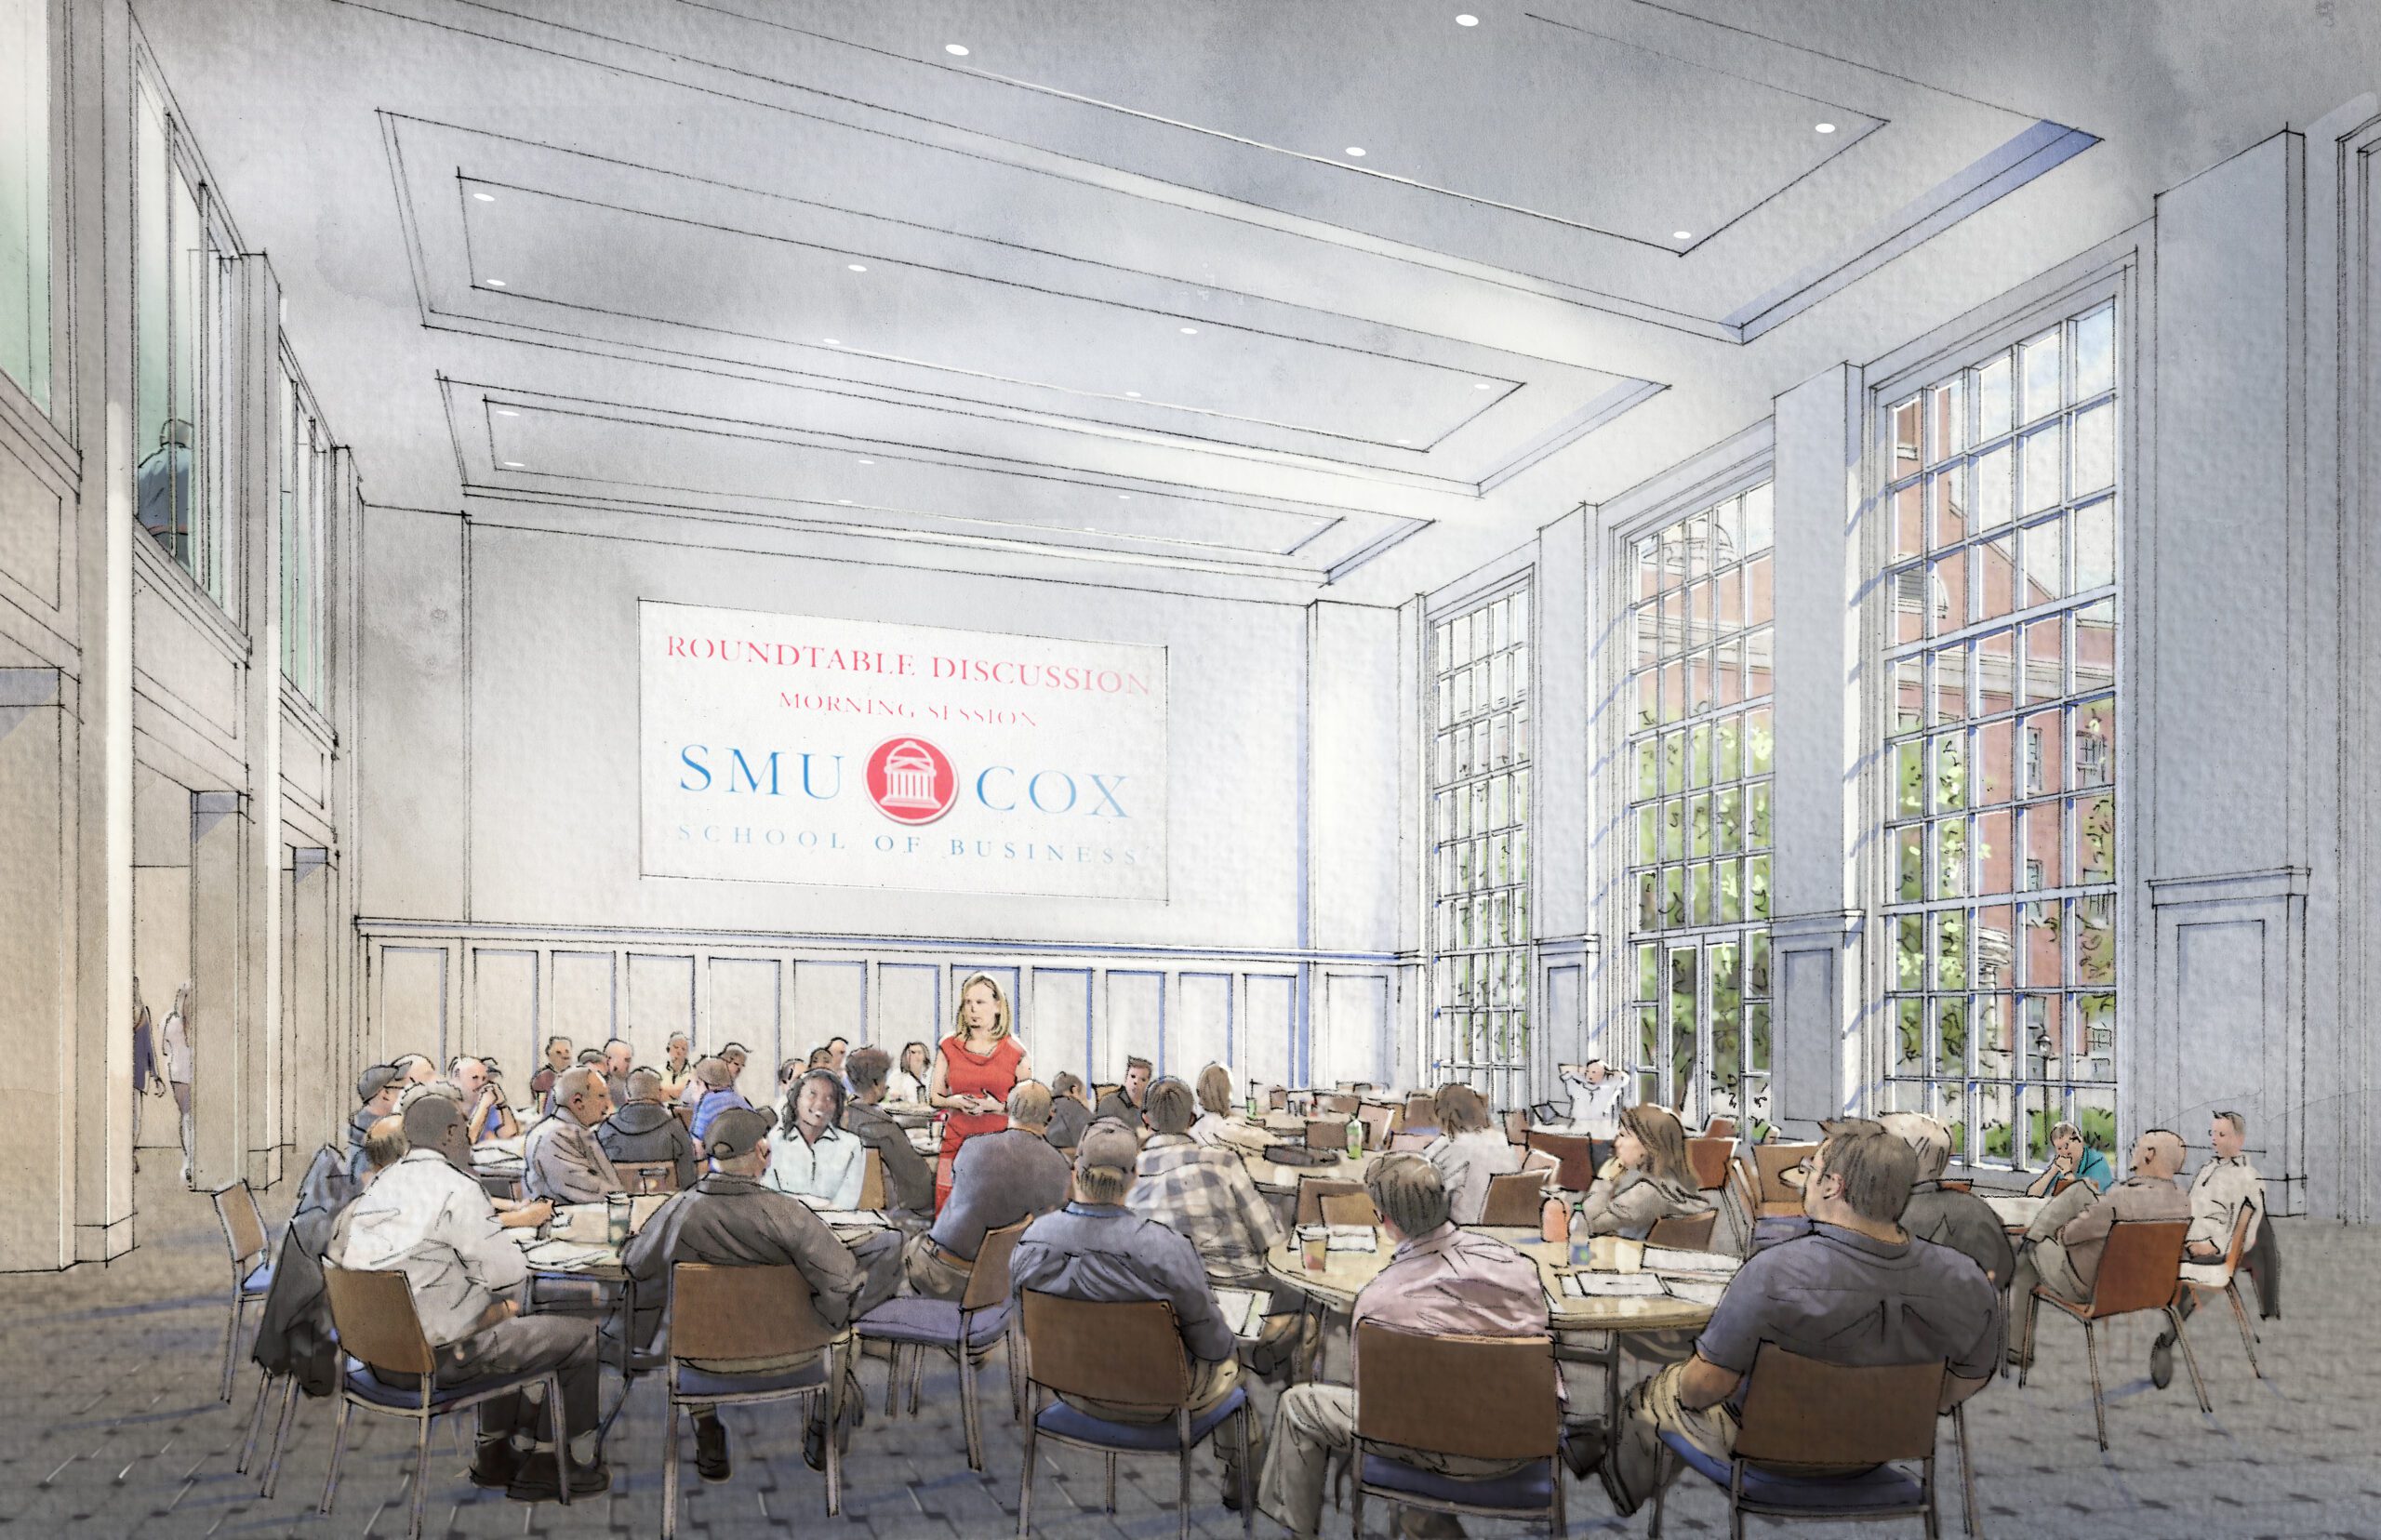 SMU Cox School of Business rendering